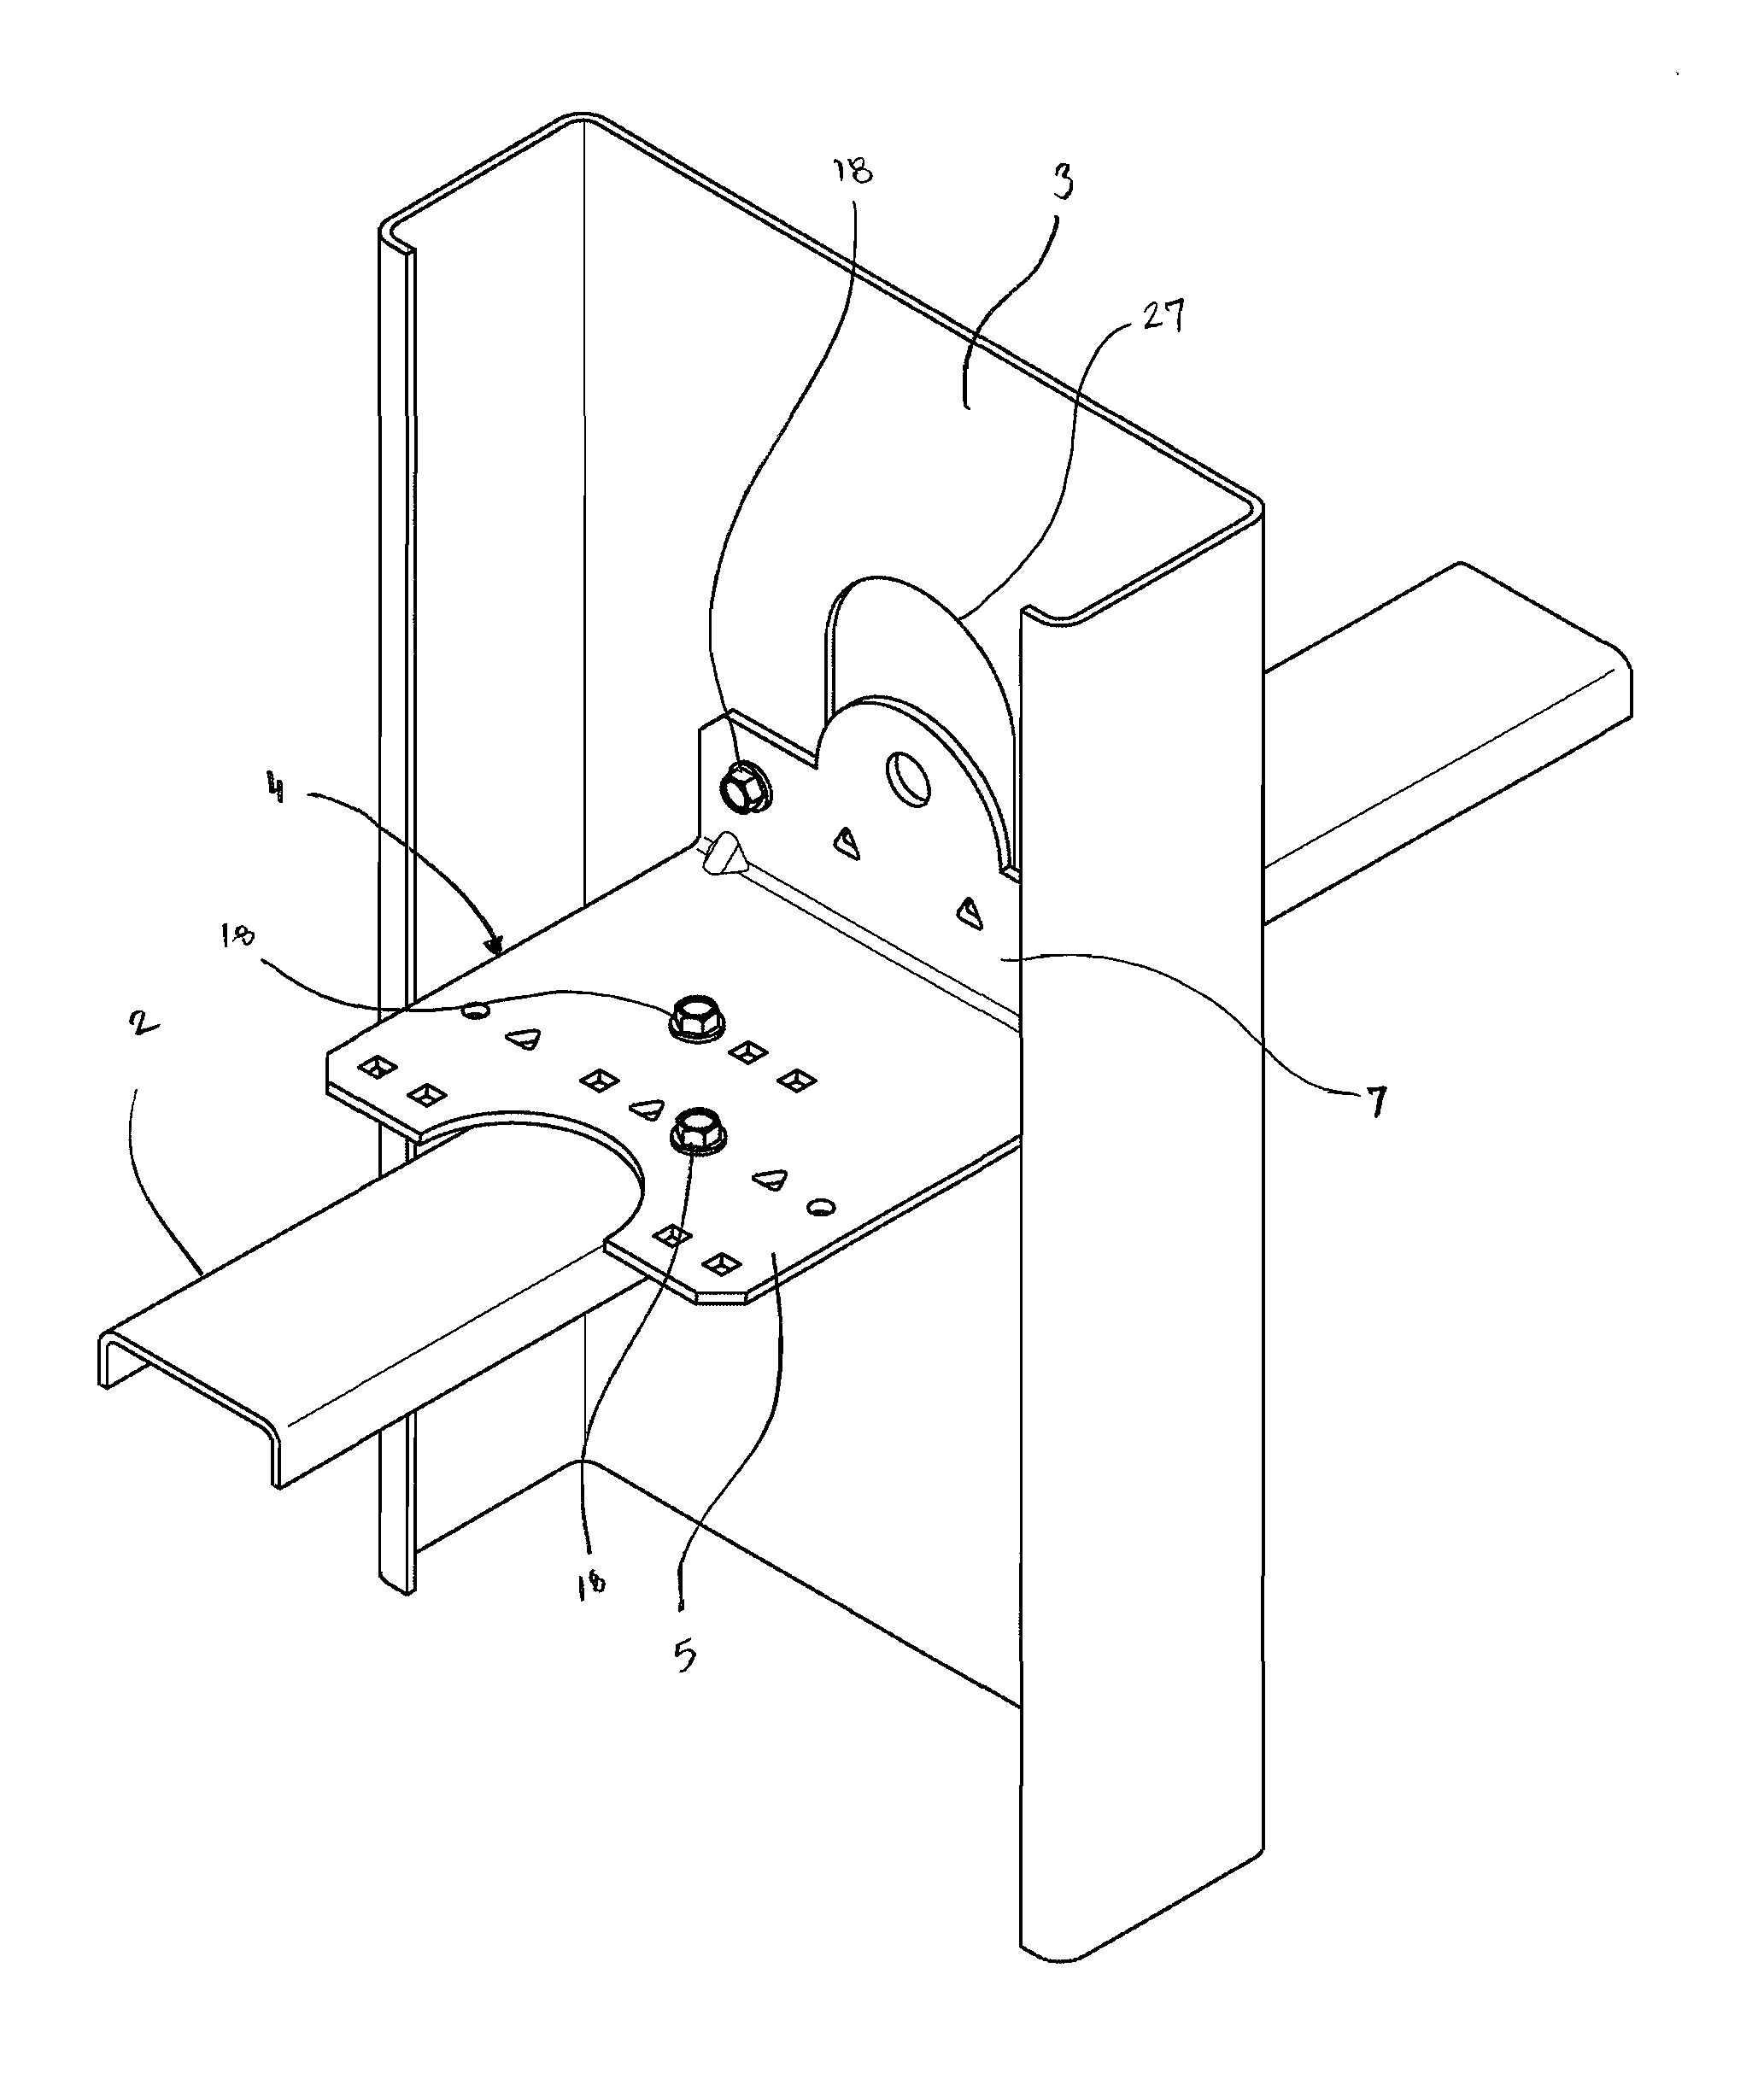 Multipurpose concrete anchor clip